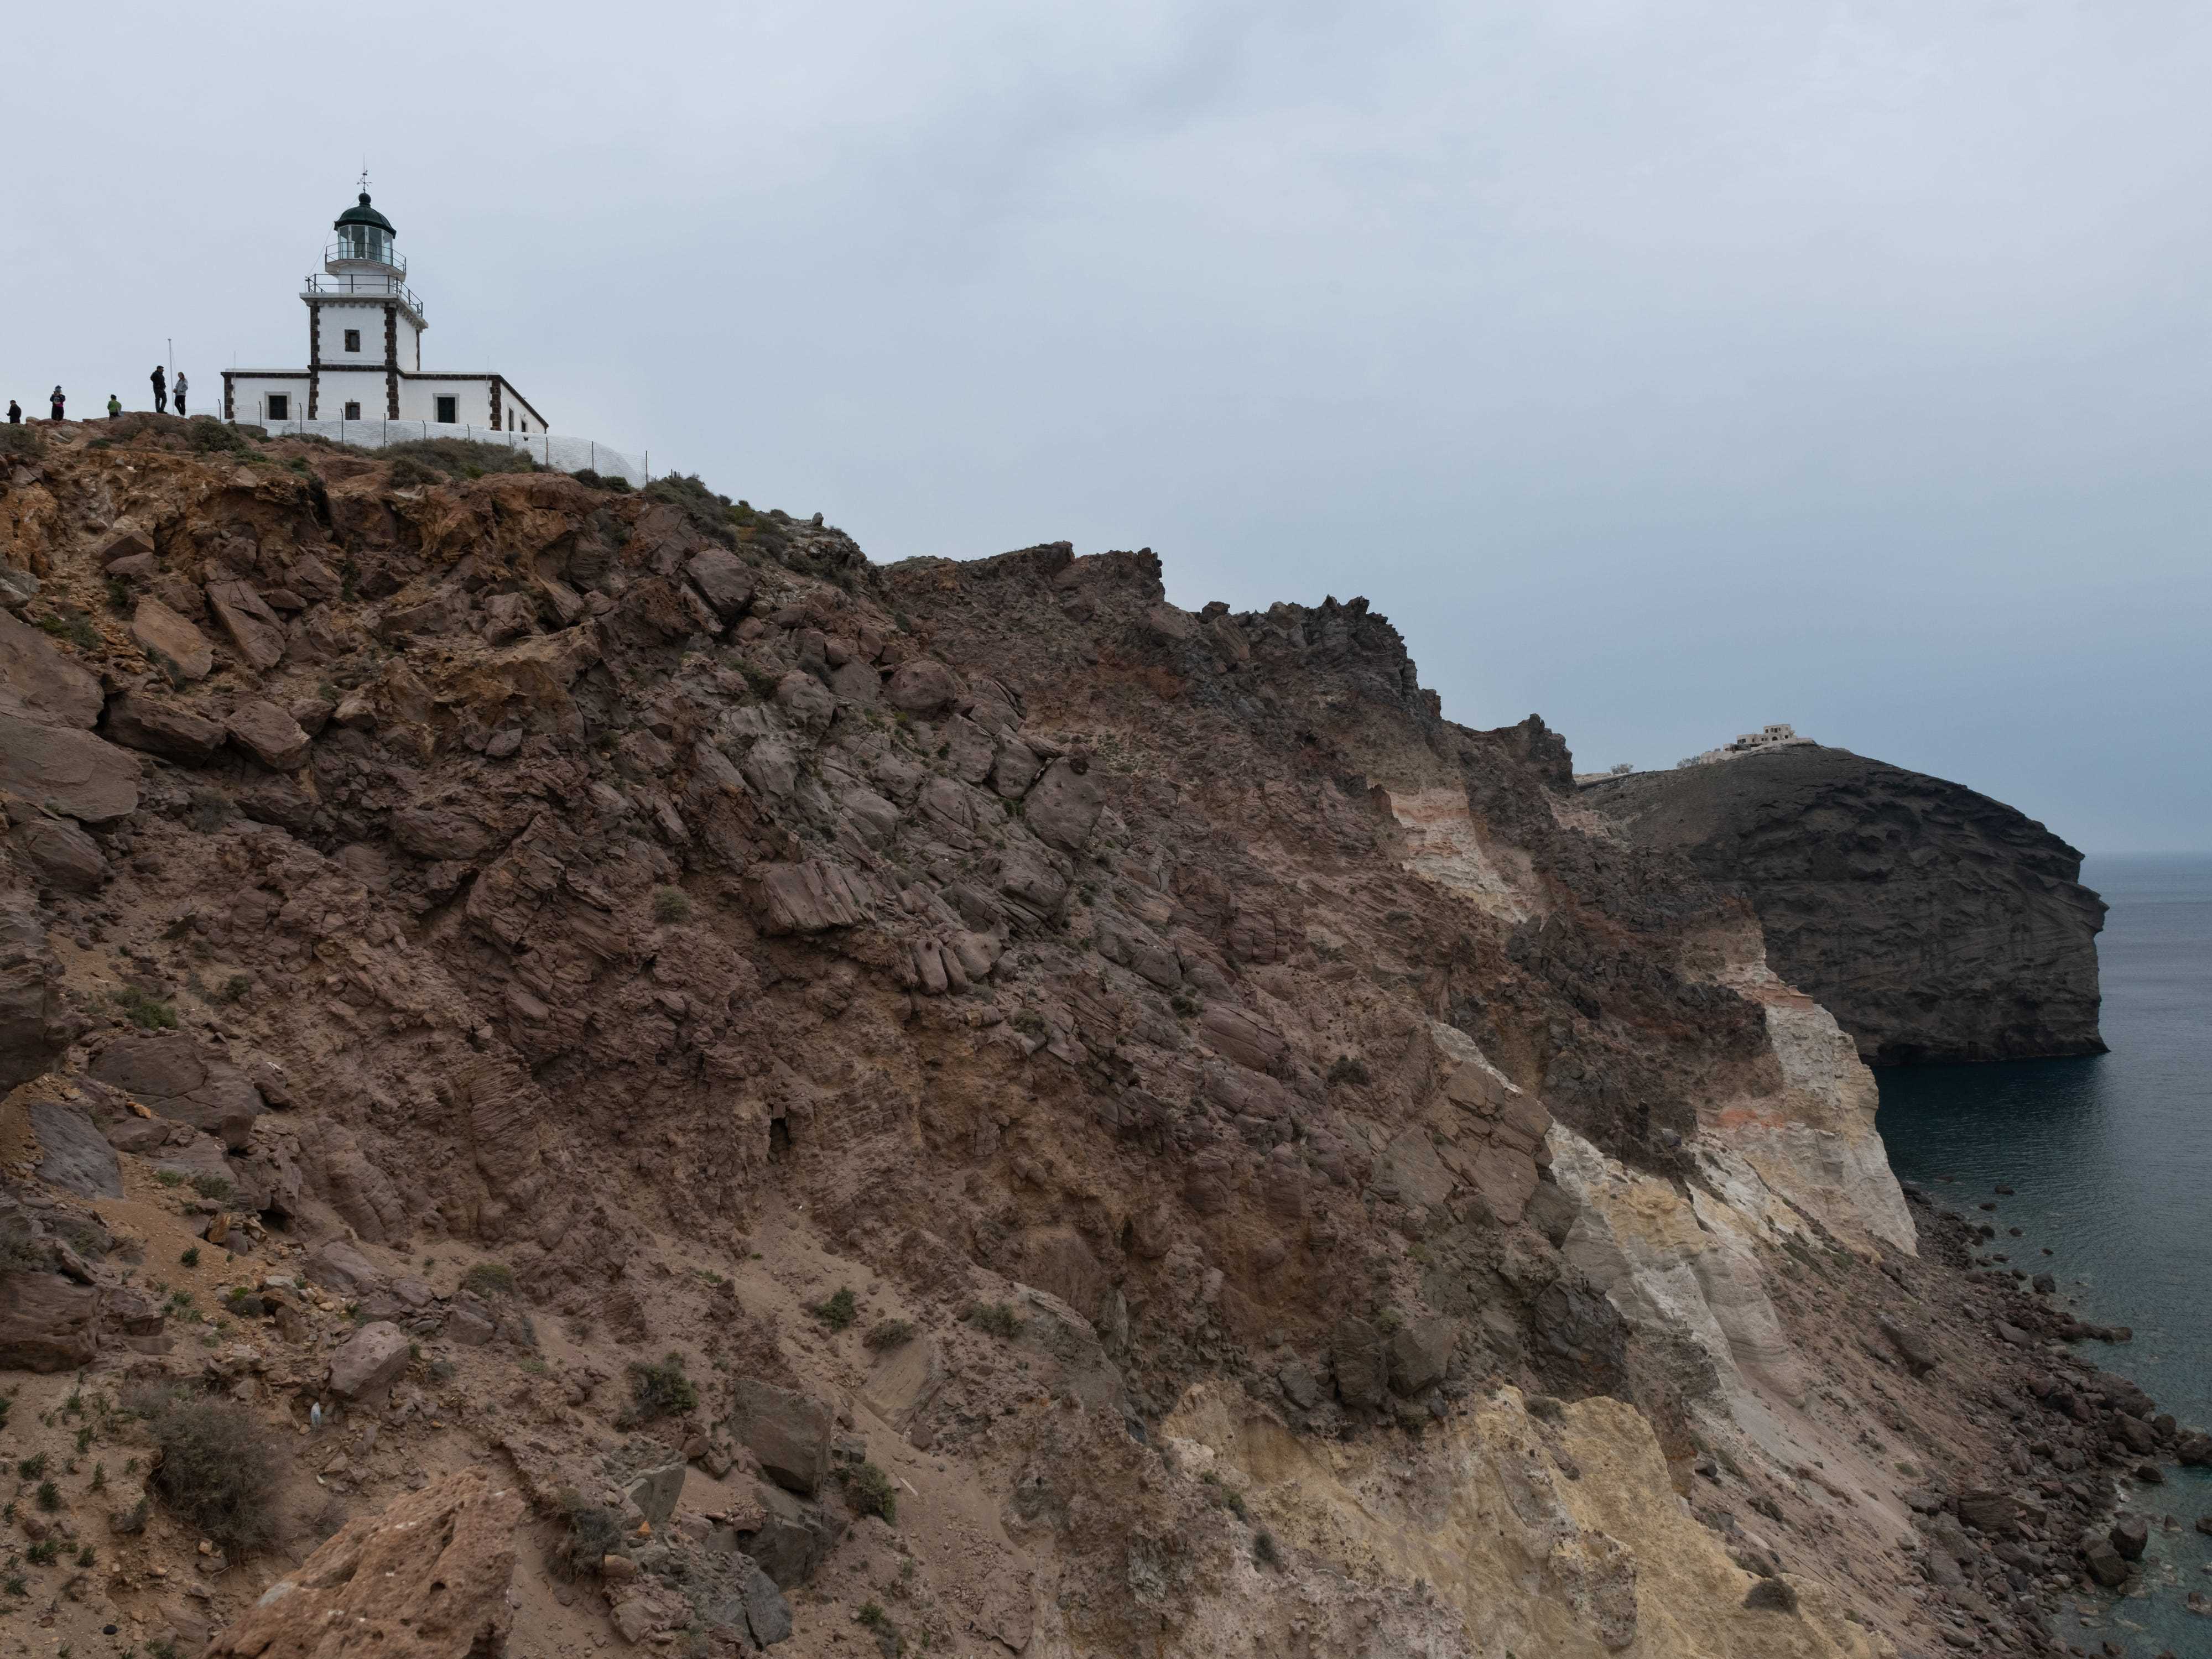 Braune Felsklippen mit Blick auf das Meer an einem düsteren Tag.  In der Ferne ein weißer Leuchtturm mit Silhouetten von Menschen